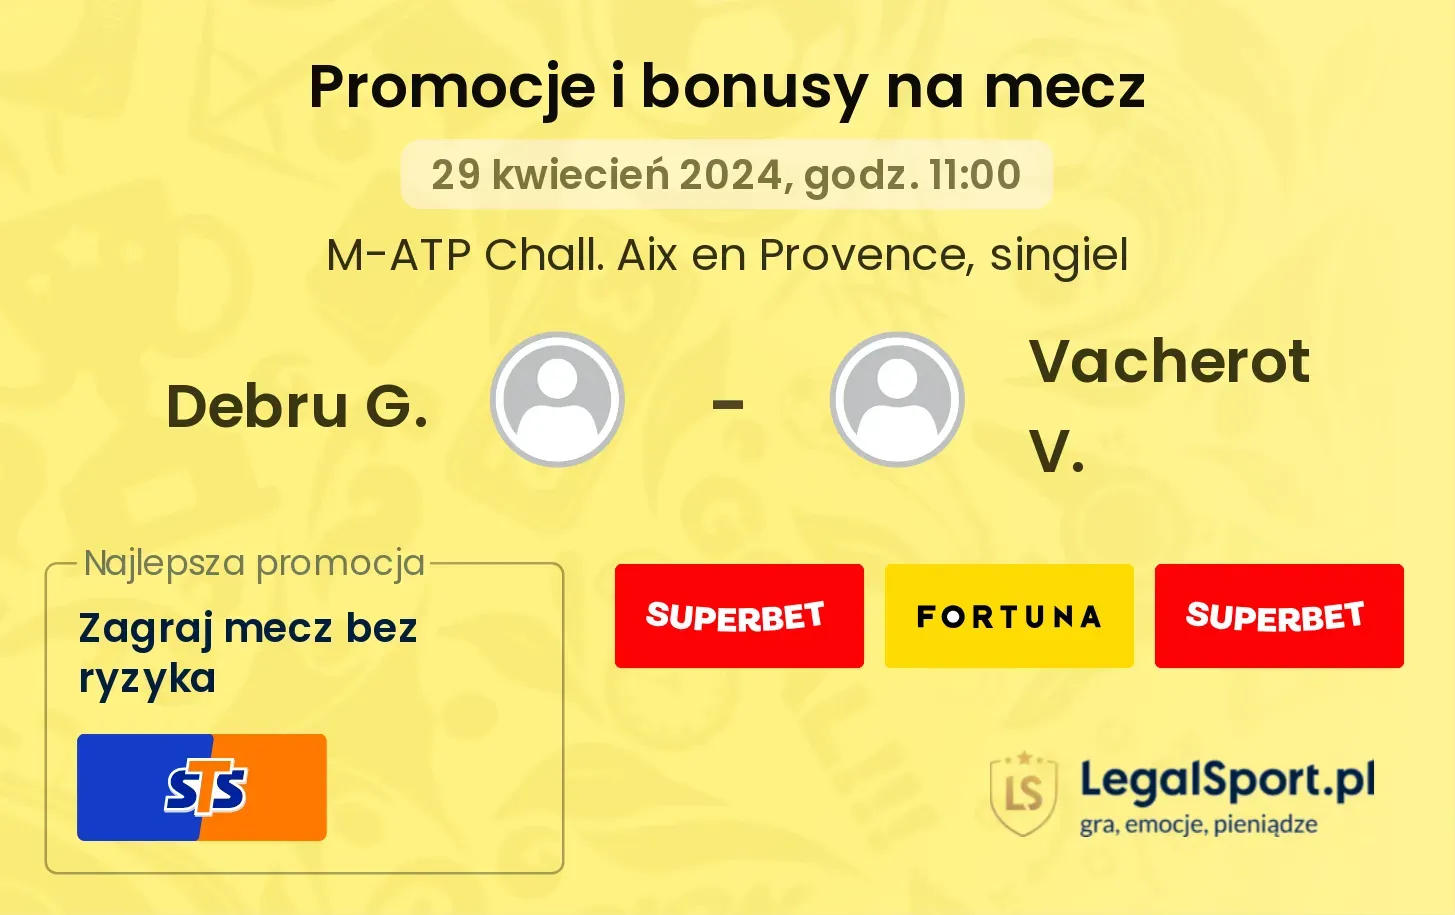 Debru G. - Vacherot V. promocje bonusy na mecz